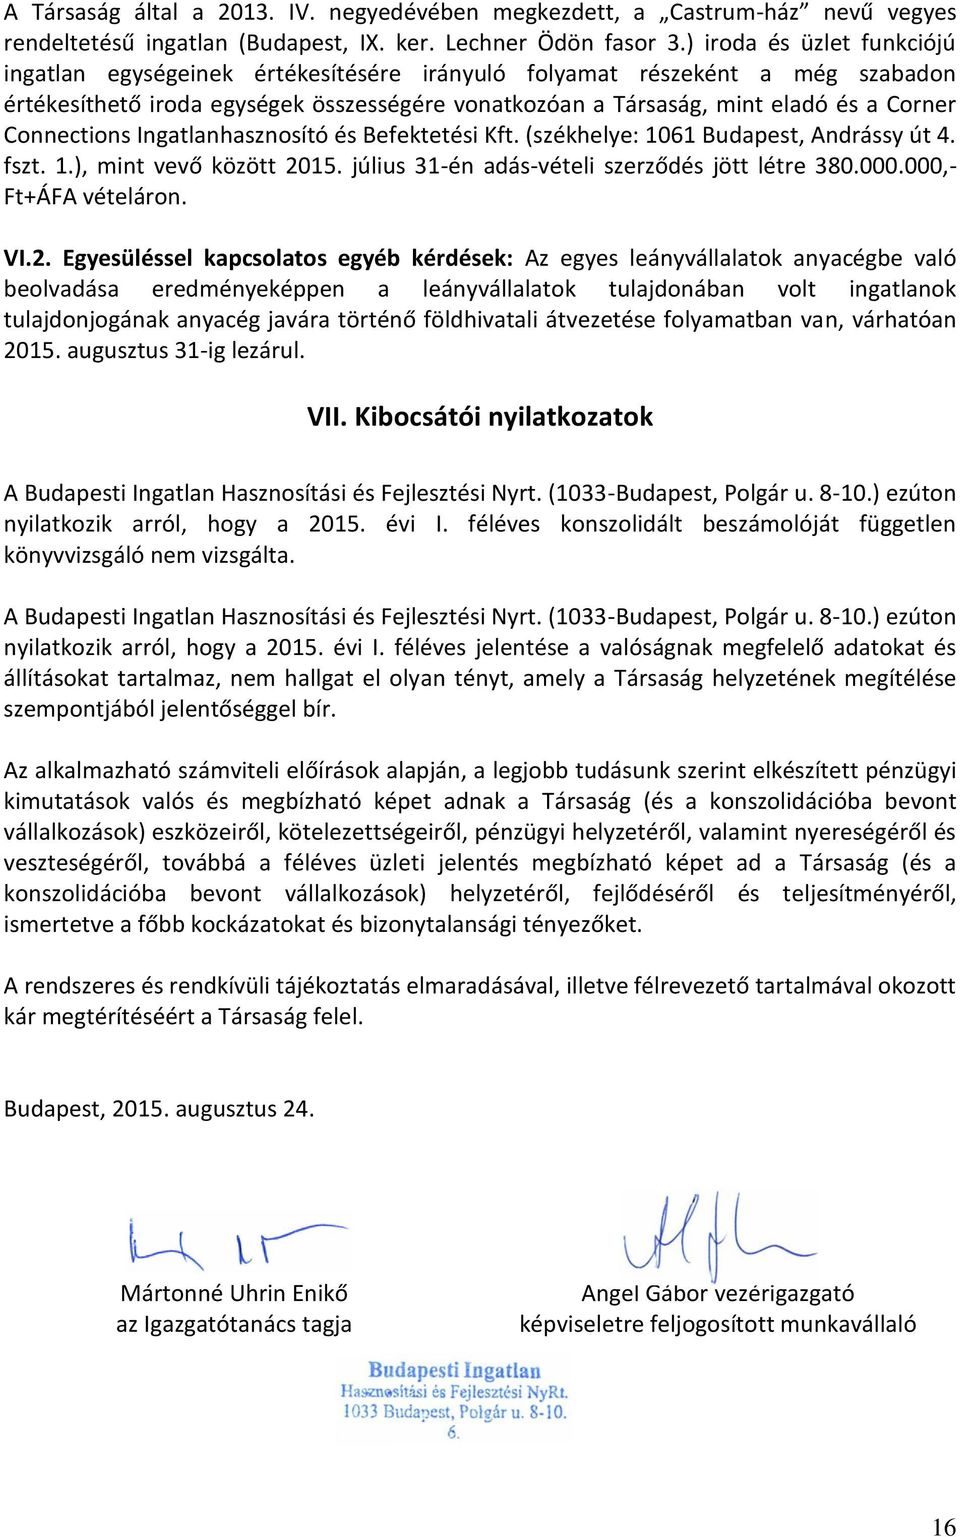 Connections Ingatlanhasznosító és Befektetési Kft. (székhelye: 1061 Budapest, Andrássy út 4. fszt. 1.), mint vevő között 2015. július 31-én adás-vételi szerződés jött létre 380.000.